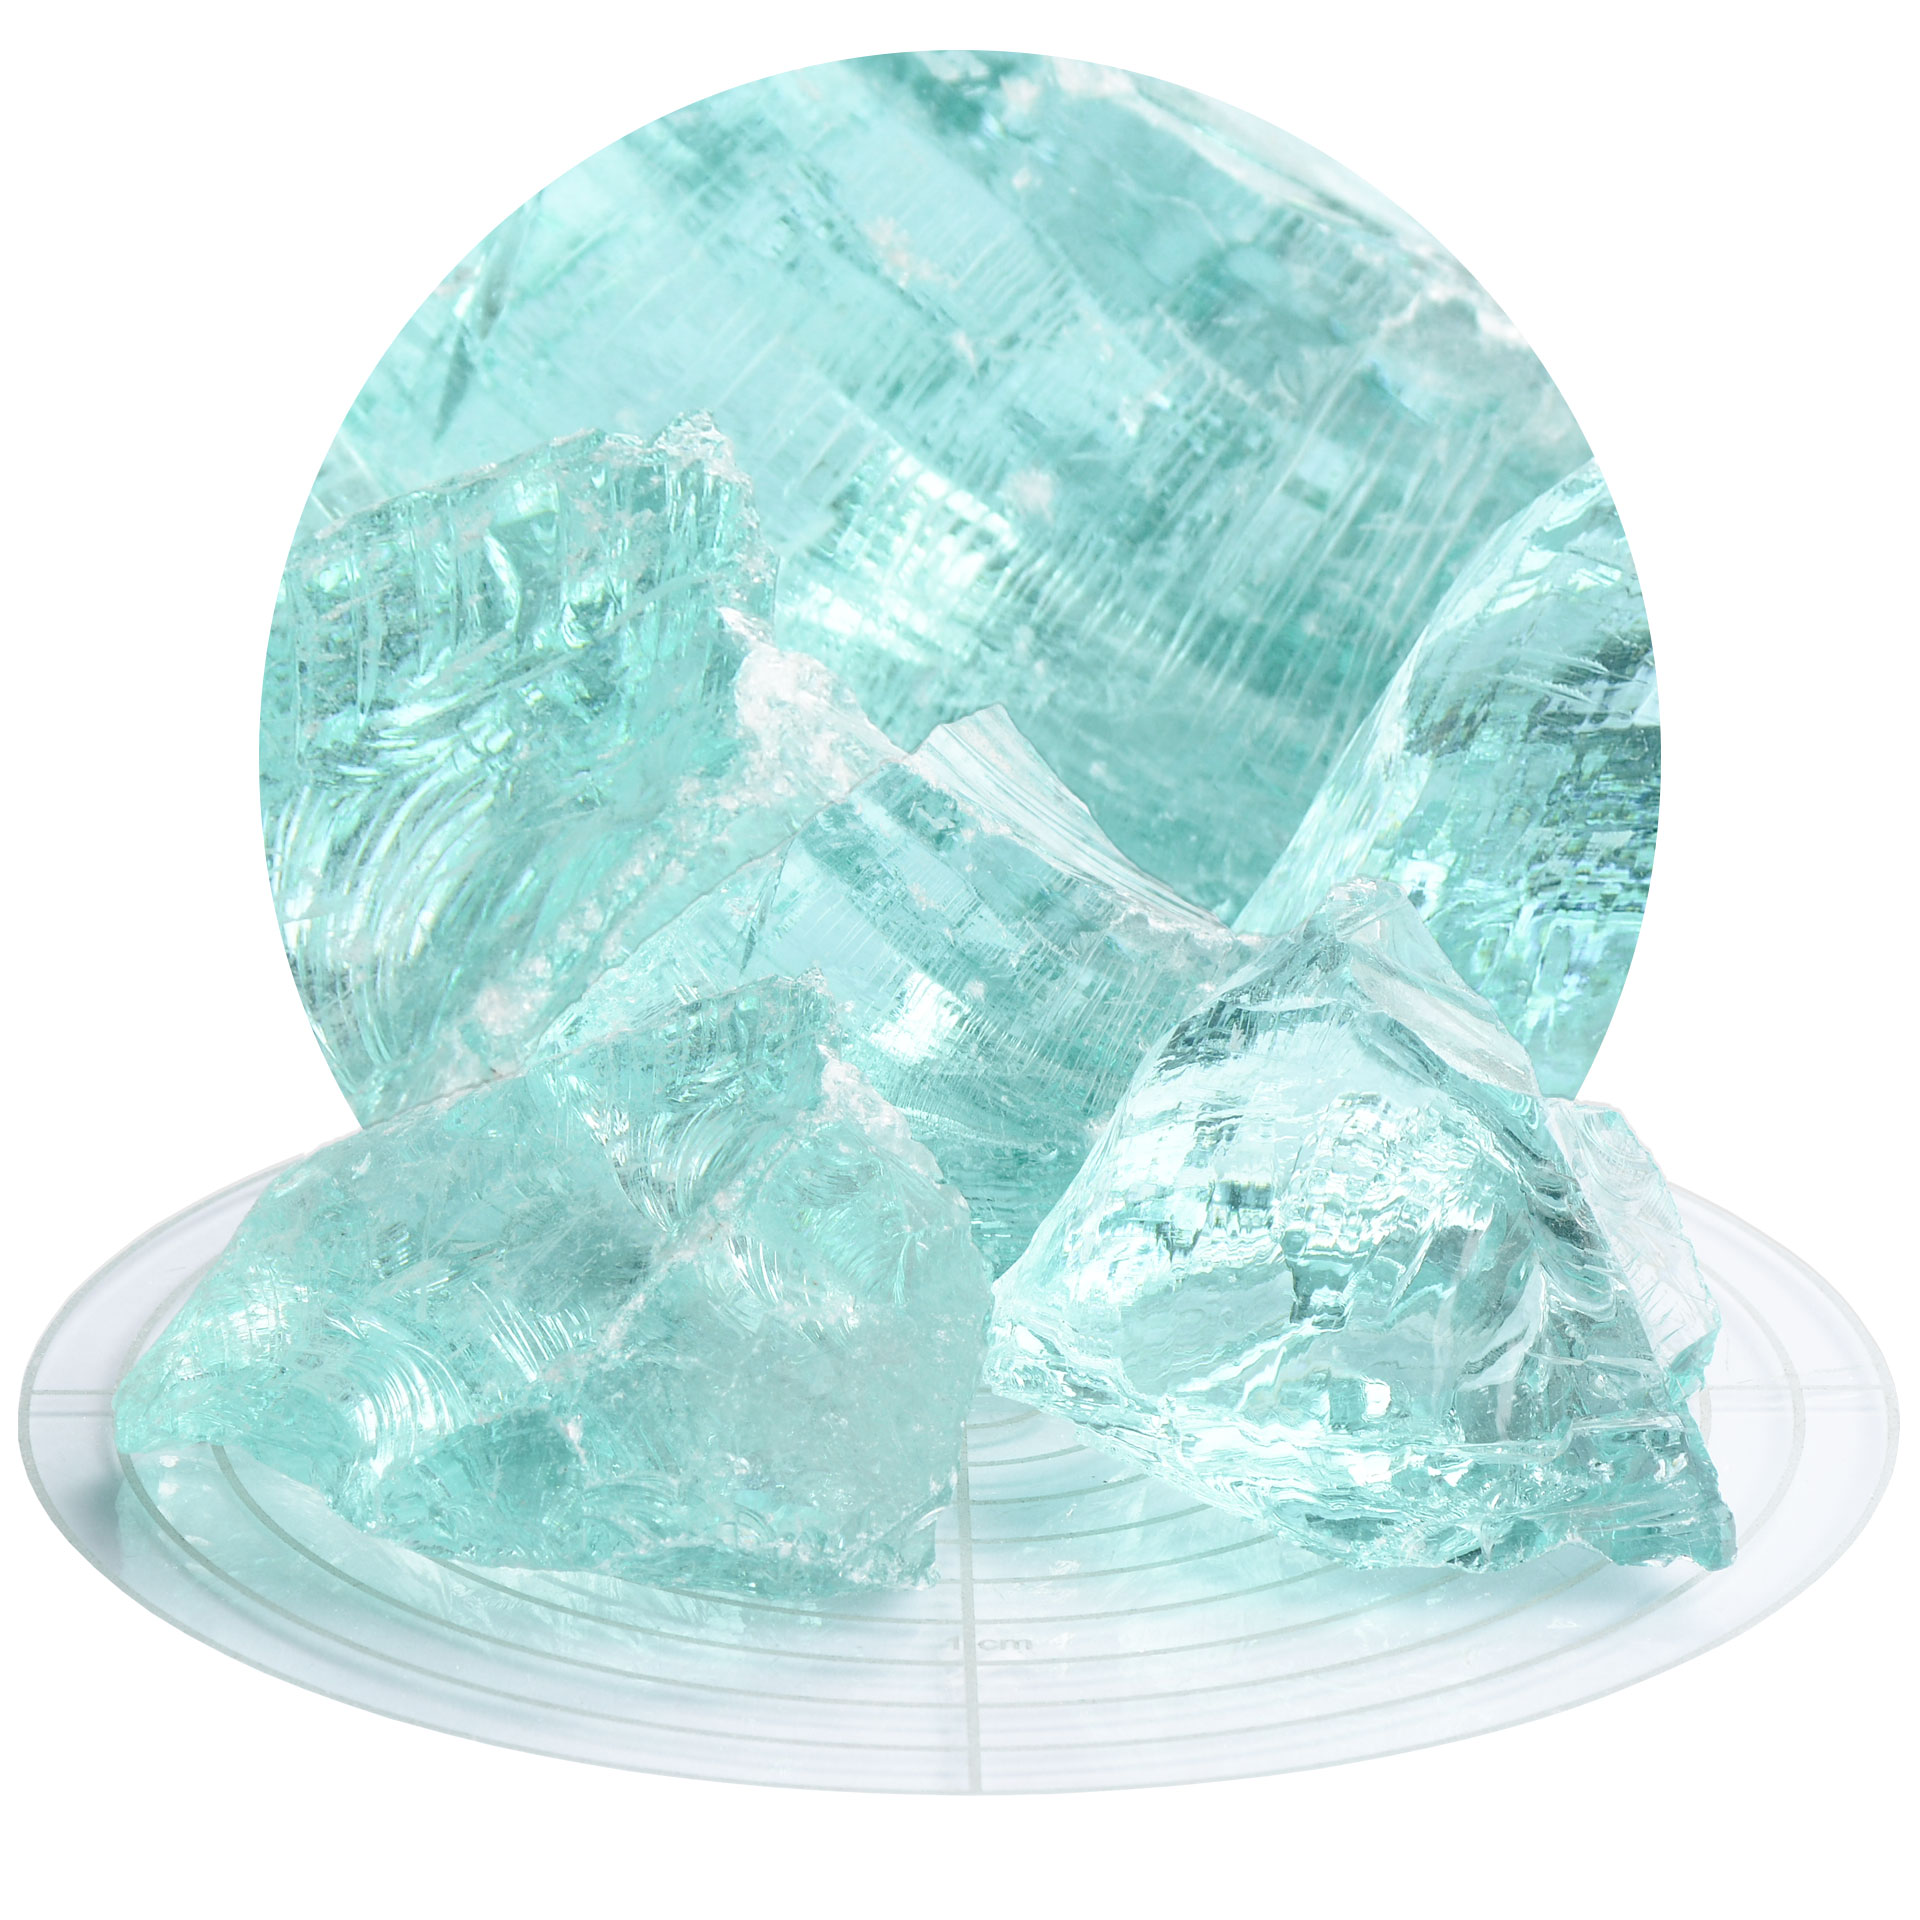 Schicker Mineral Glassteine azurblau 60-120 mm 10 kg20 kg Garten Glasbrocken